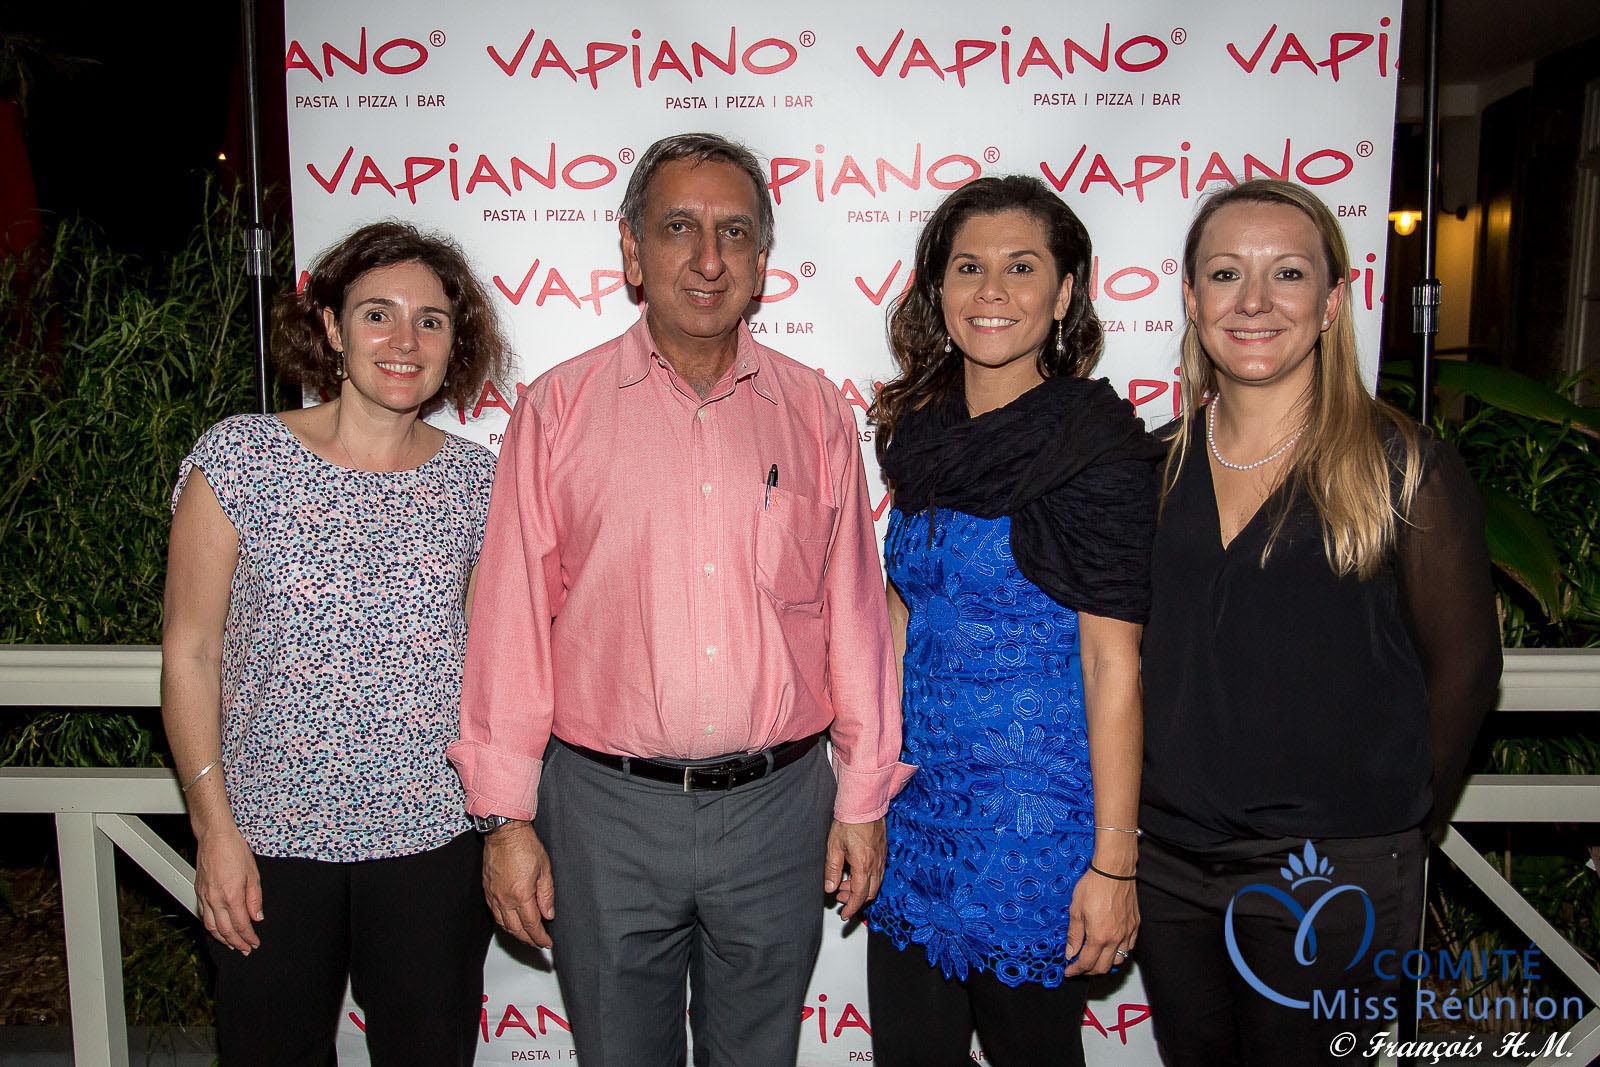 Aziz Patel du Comité Miss Réunion avec l'équipe du Vapiano